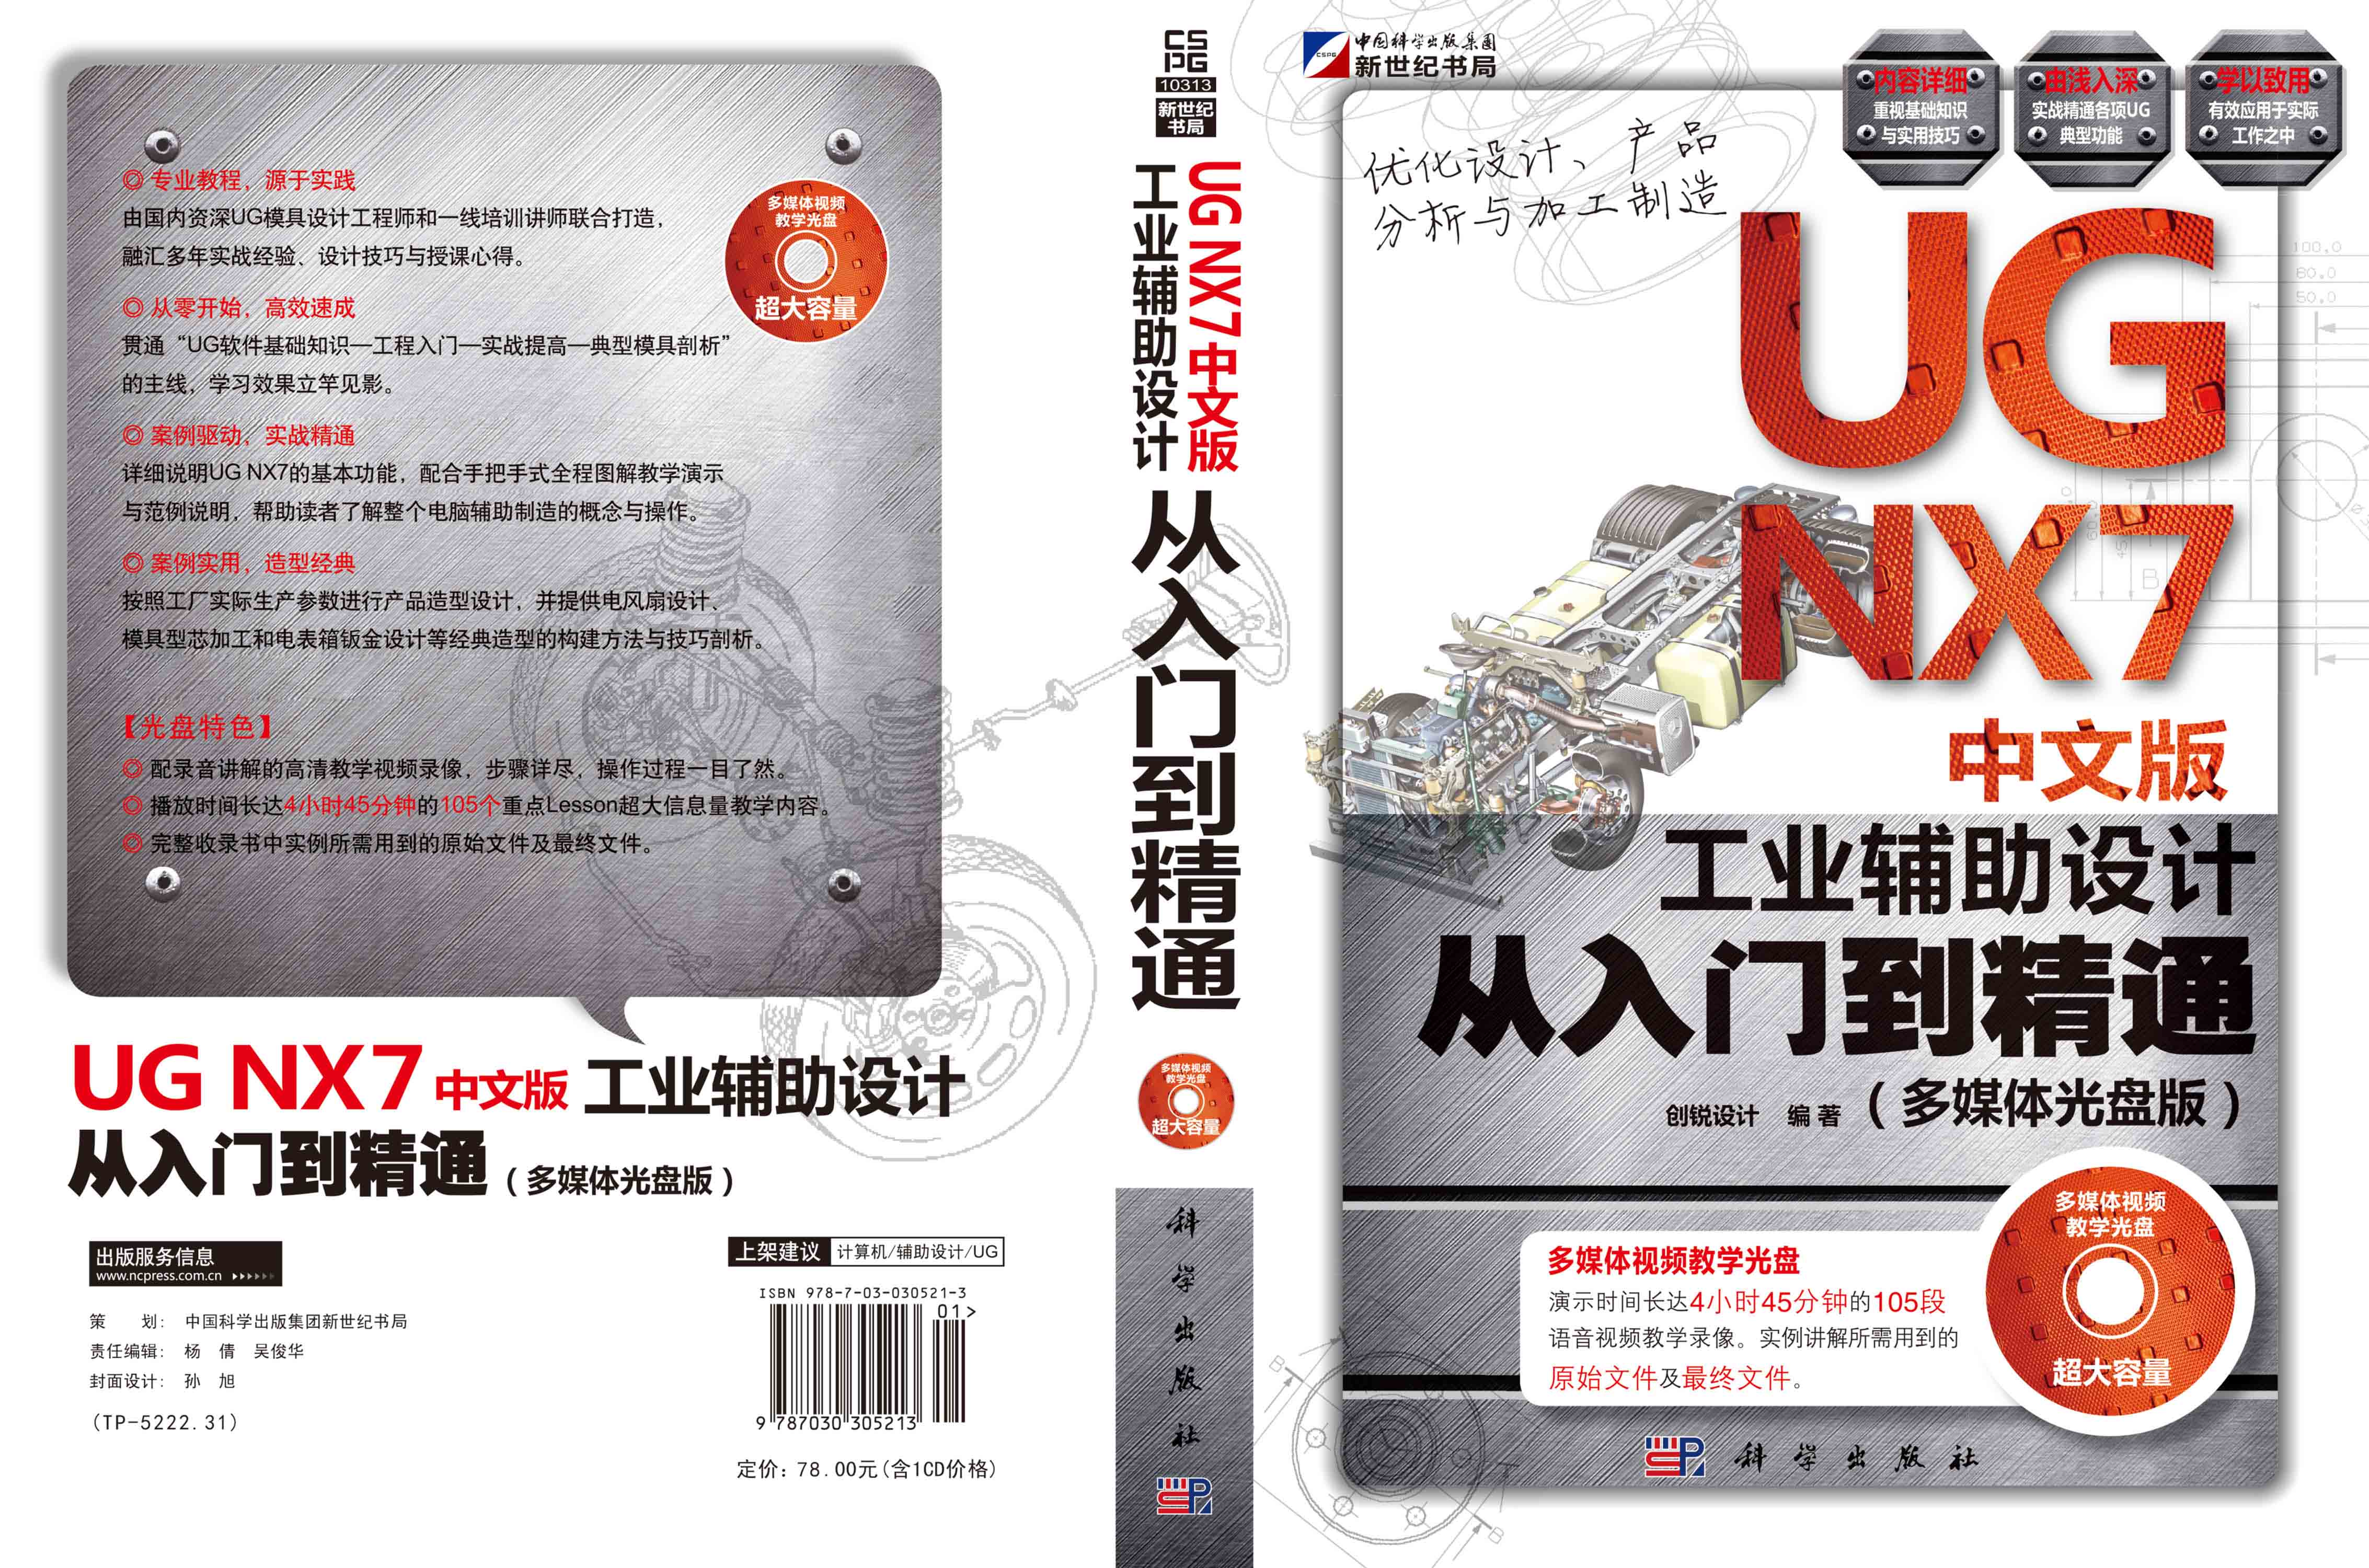 UGNX7中文版工业辅助设计从入门到精通